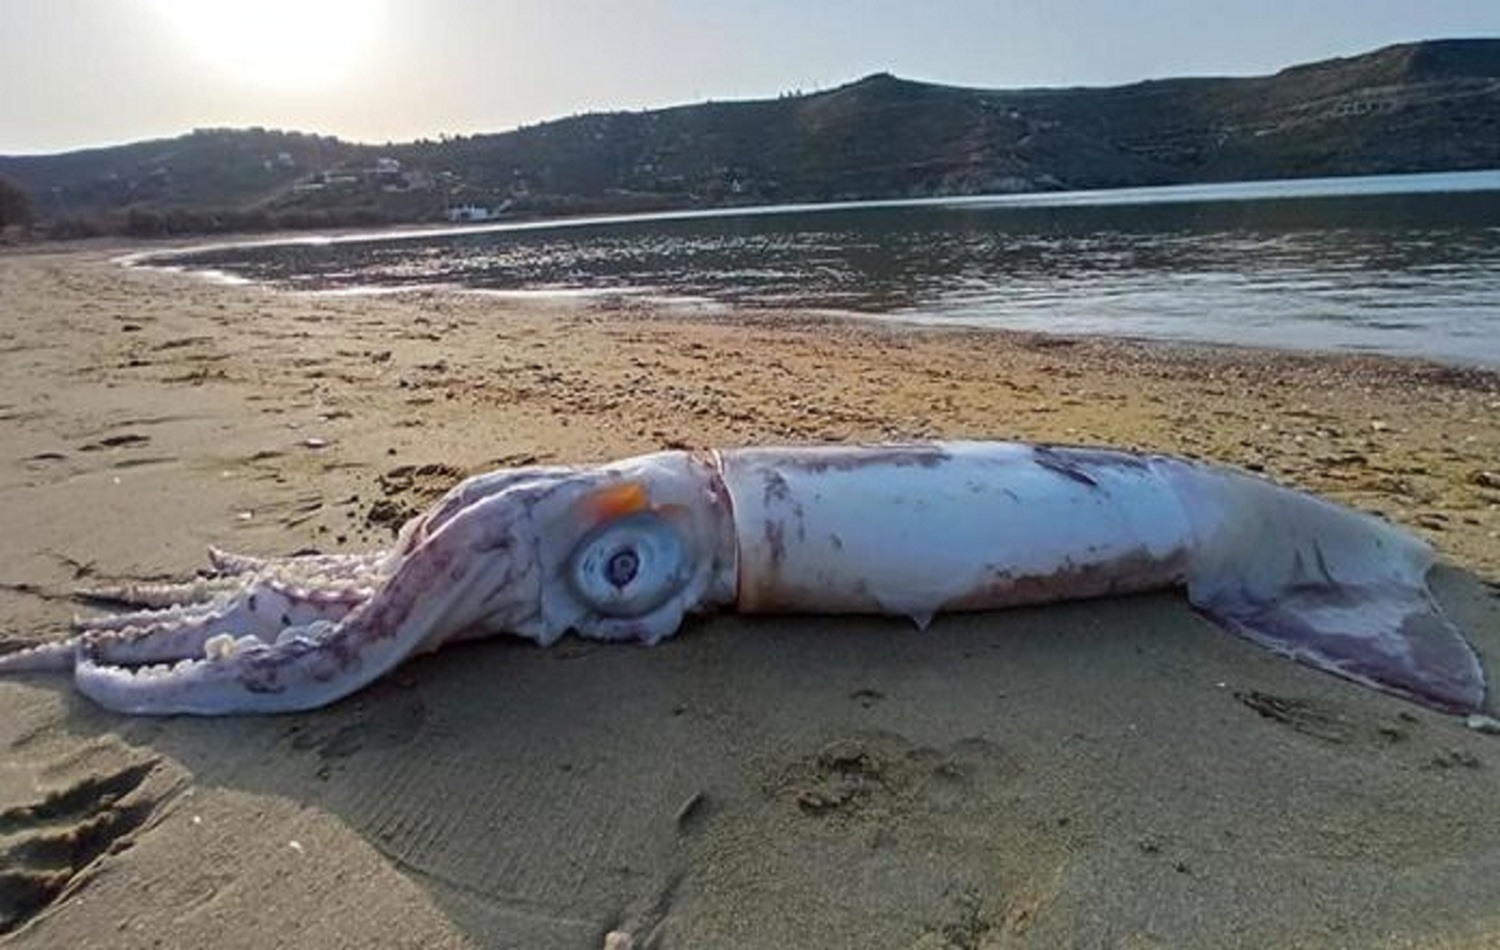 Θράψαλο «γίγας» ξέβρασε η θάλασσα στην παραλία Οτζιάς της Κέας - e-Nautilia.gr | Το Ελληνικό Portal για την Ναυτιλία. Τελευταία νέα, άρθρα, Οπτικοακουστικό Υλικό